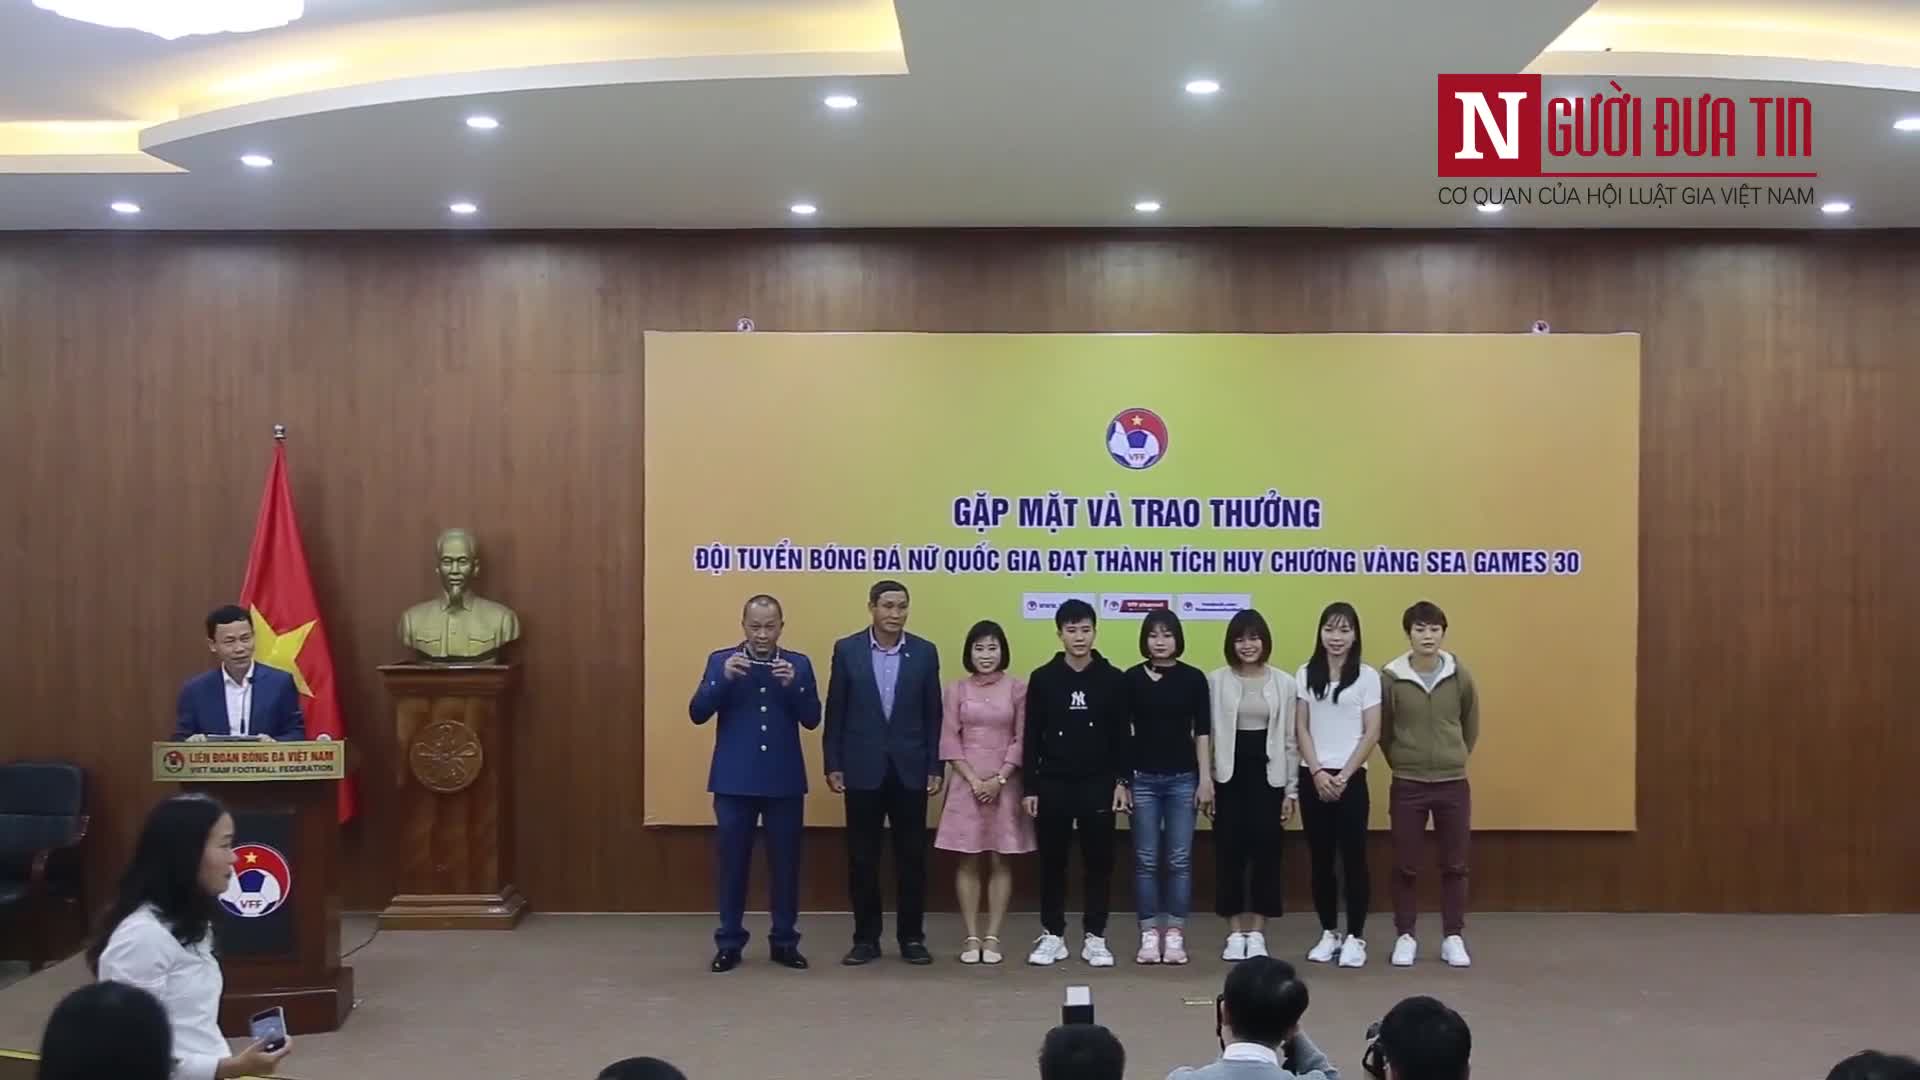 Khen thưởng, động viên các nữ cầu thủ vàng Việt Nam